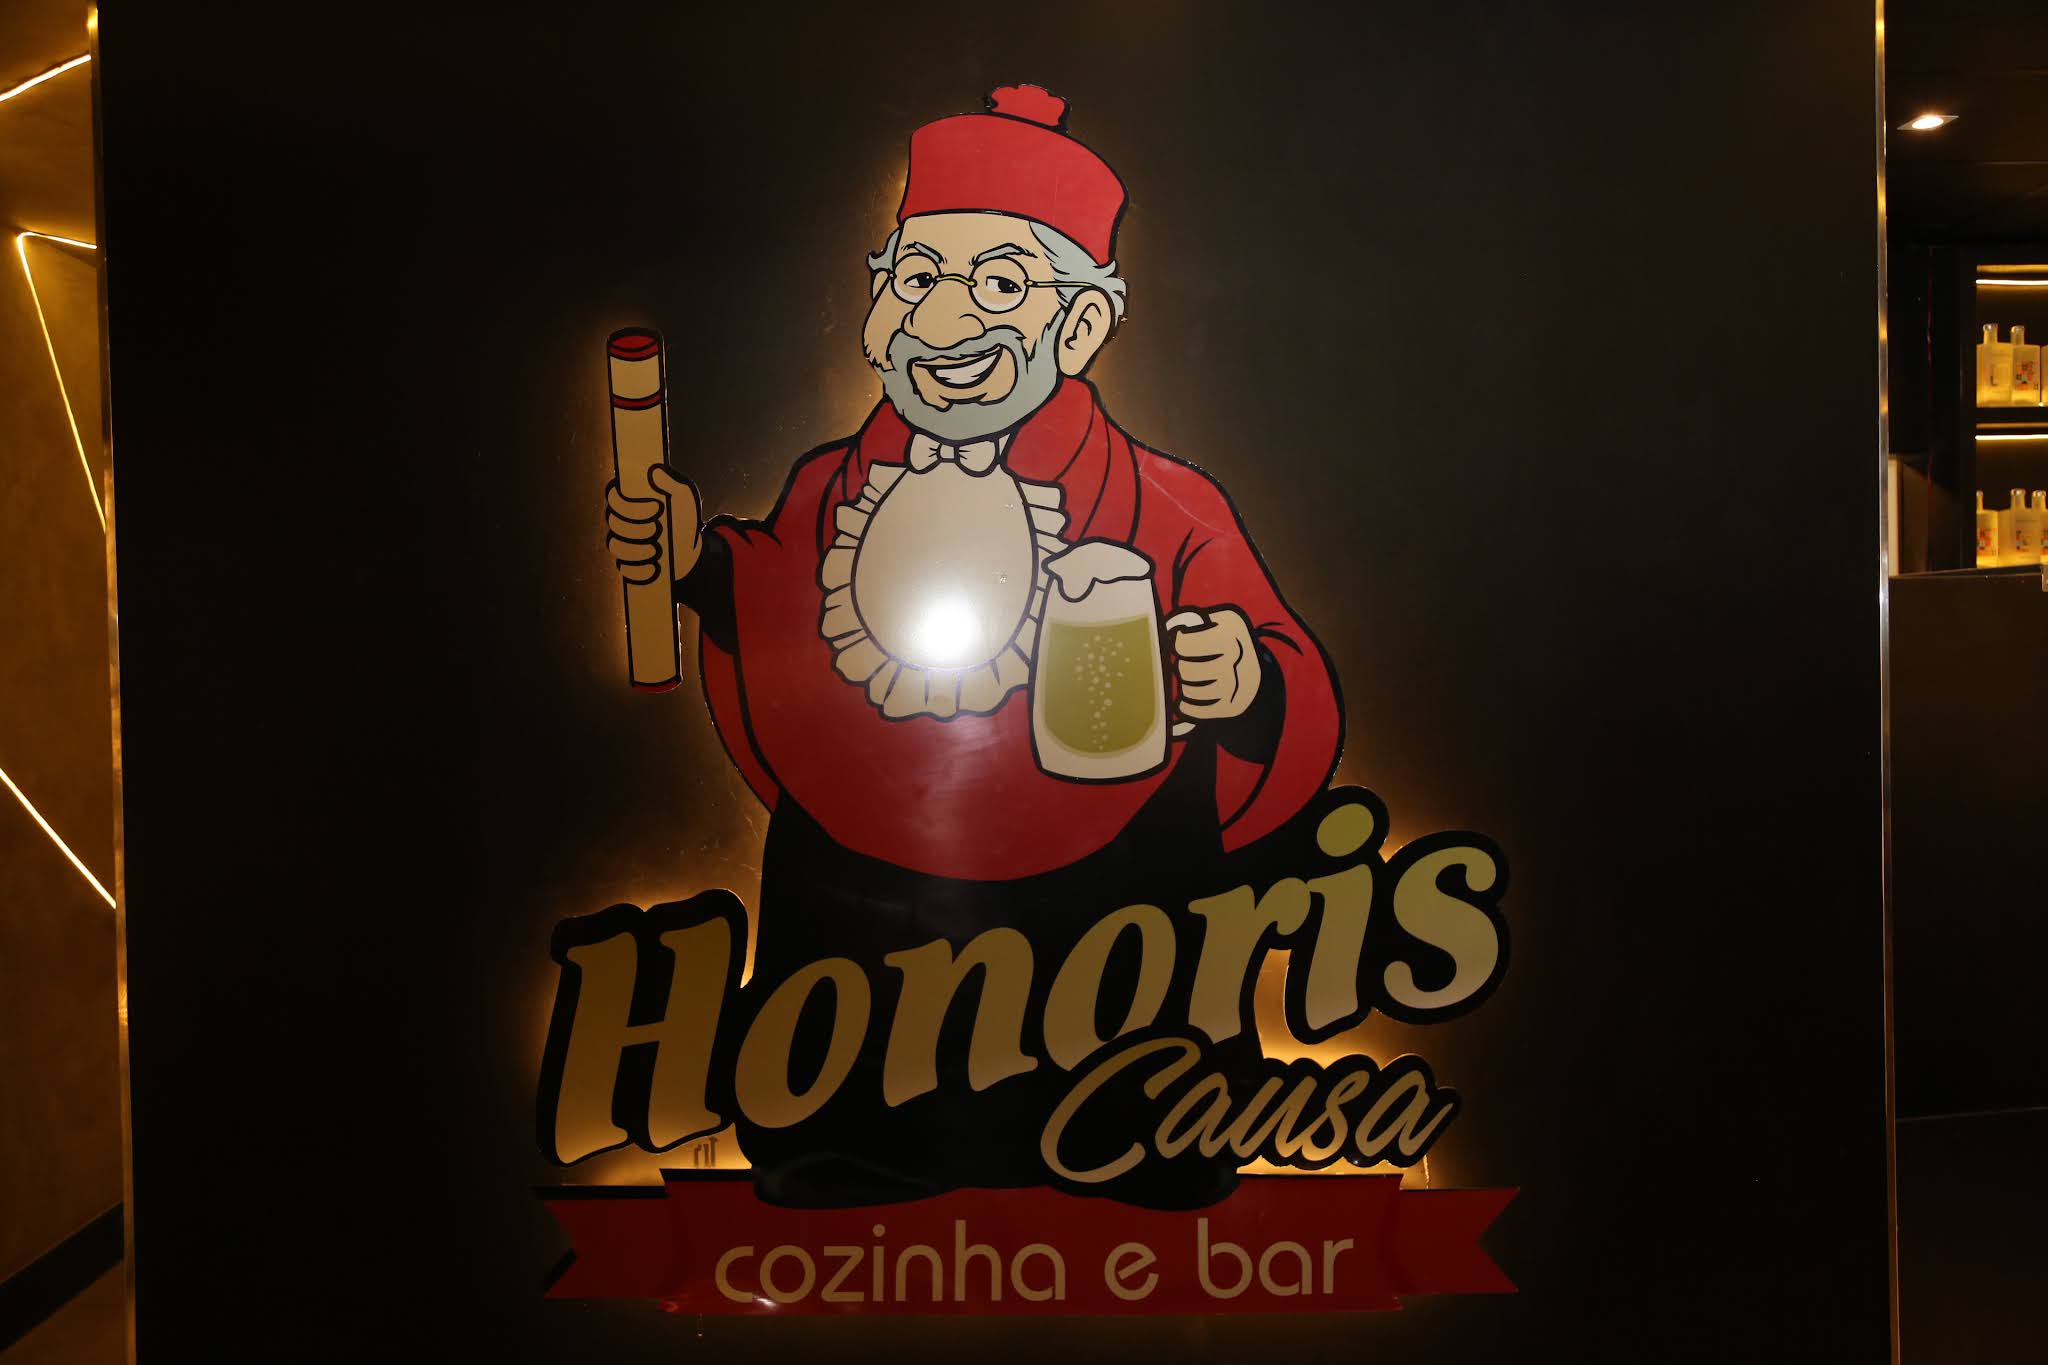 Honoris Causa em Brasília com programação musical eclética e promoções no happy hour